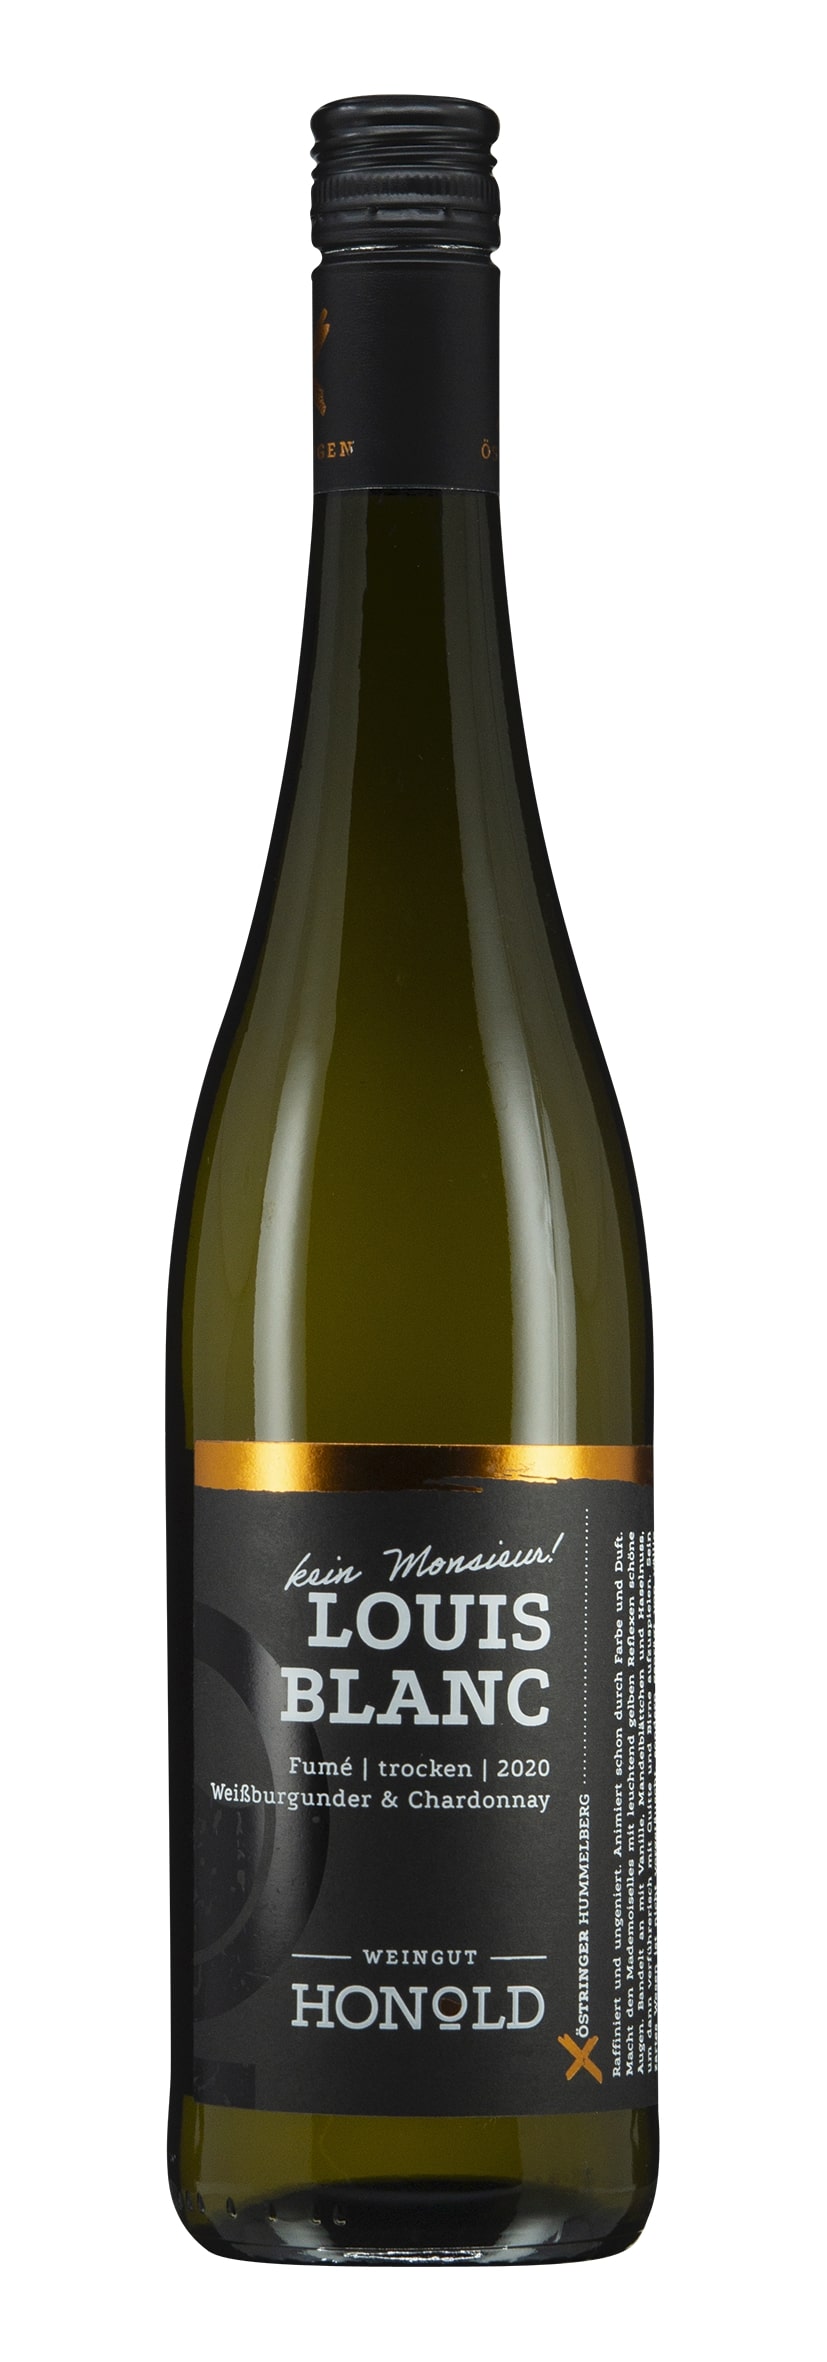 Weissburgunder Chardonnay trocken Louis Blanc 2020